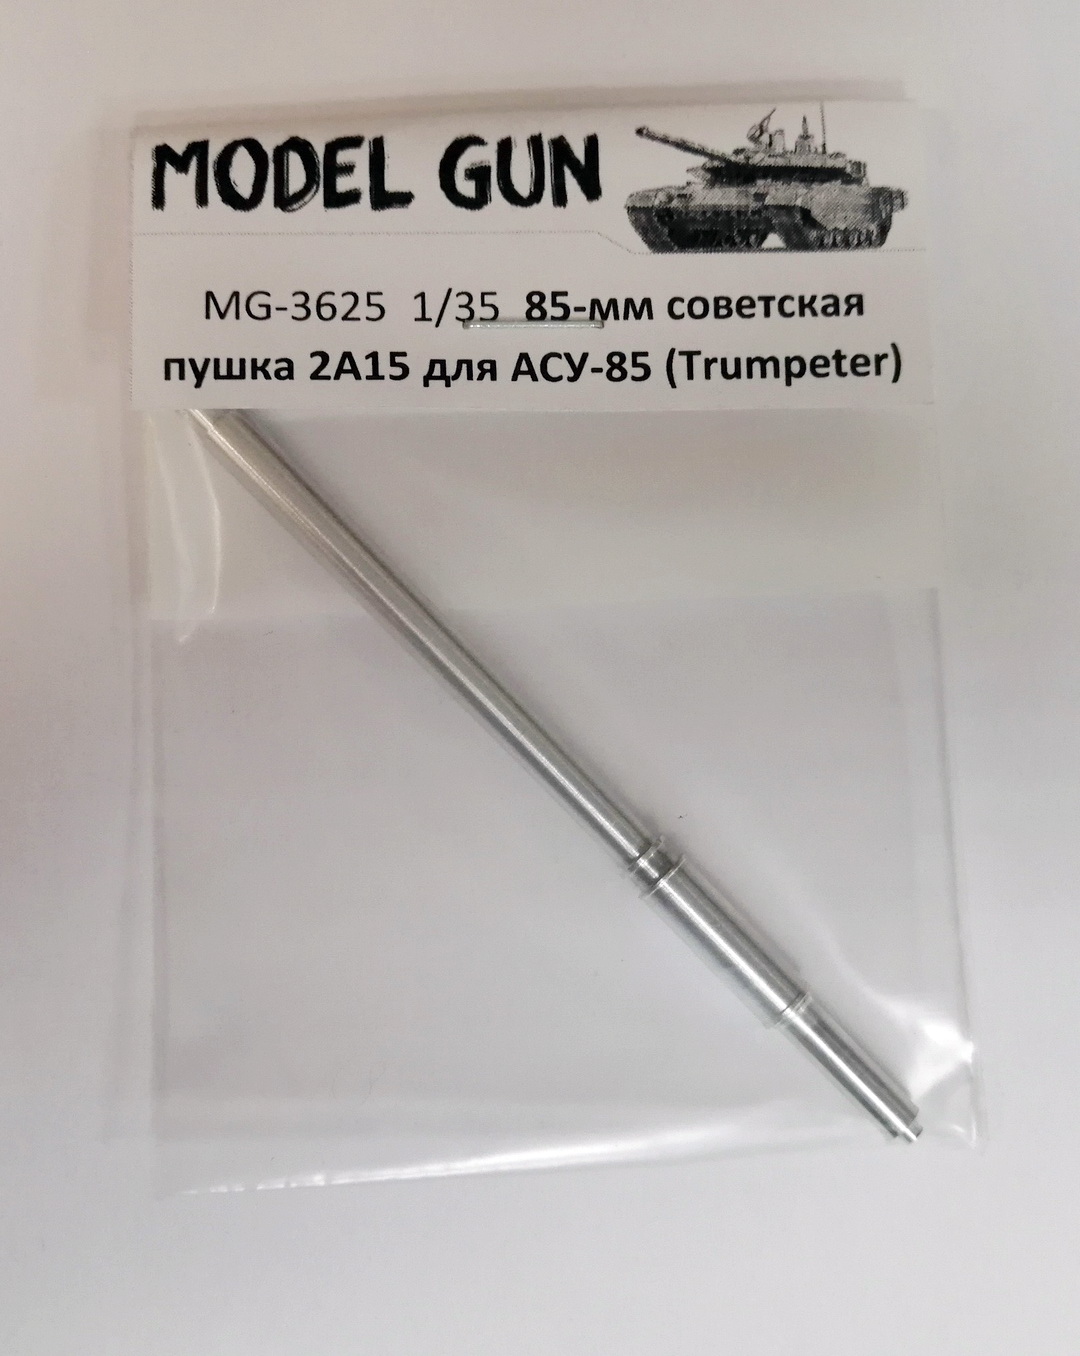 MG-3625  металлические стволы  85-мм 2А15 для АСУ-85 без дульного тормоза  (1:35)